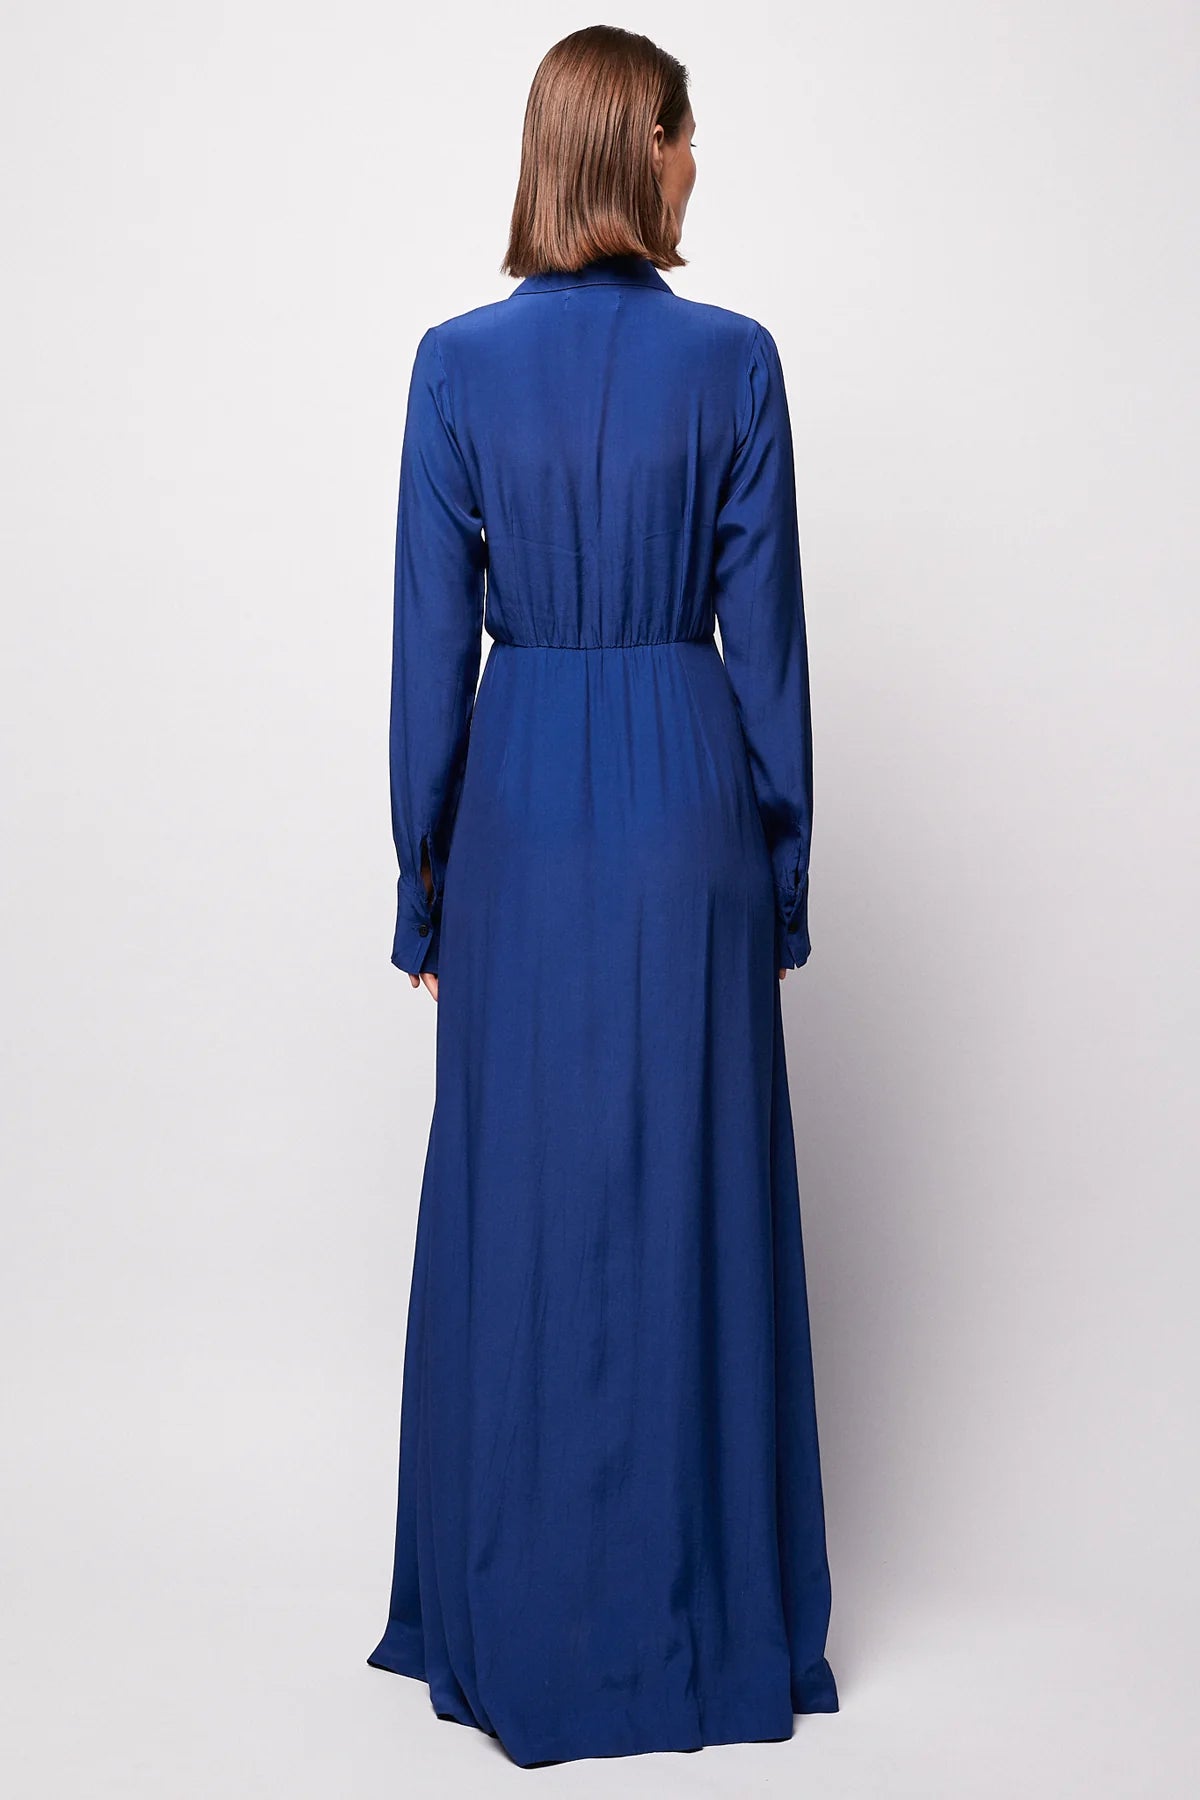 Cobalt Long Sleeve Dress